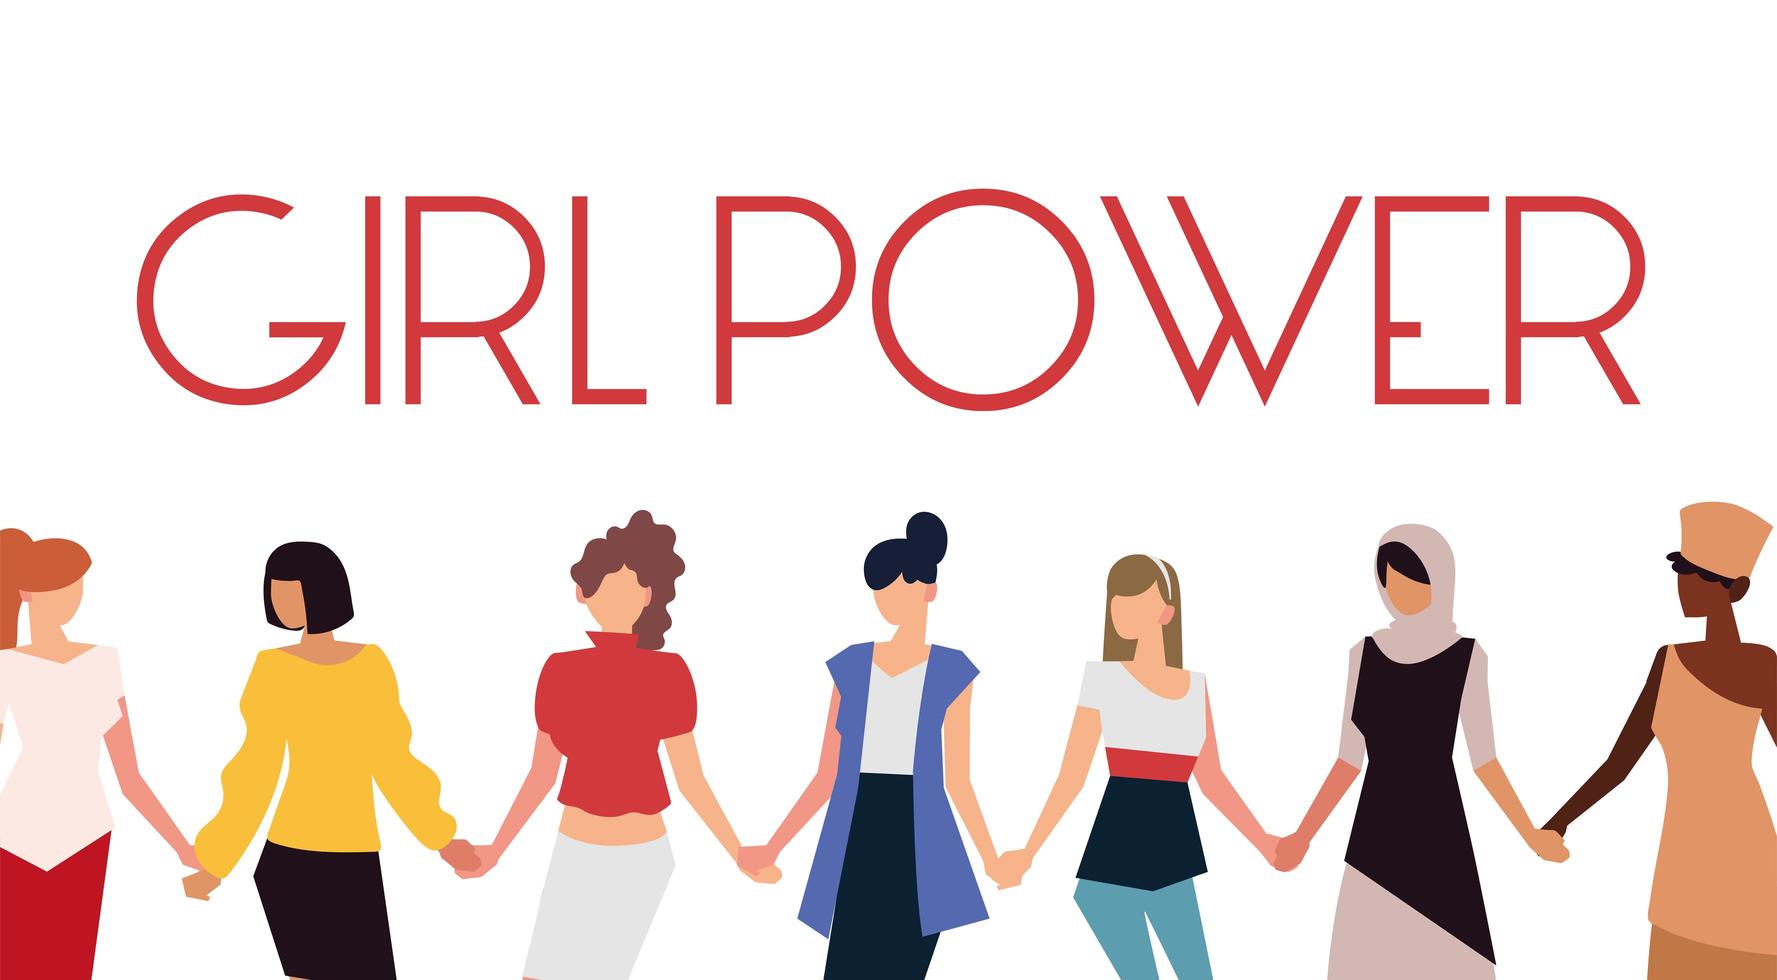 women rights feminist, group holding hands girl power vector